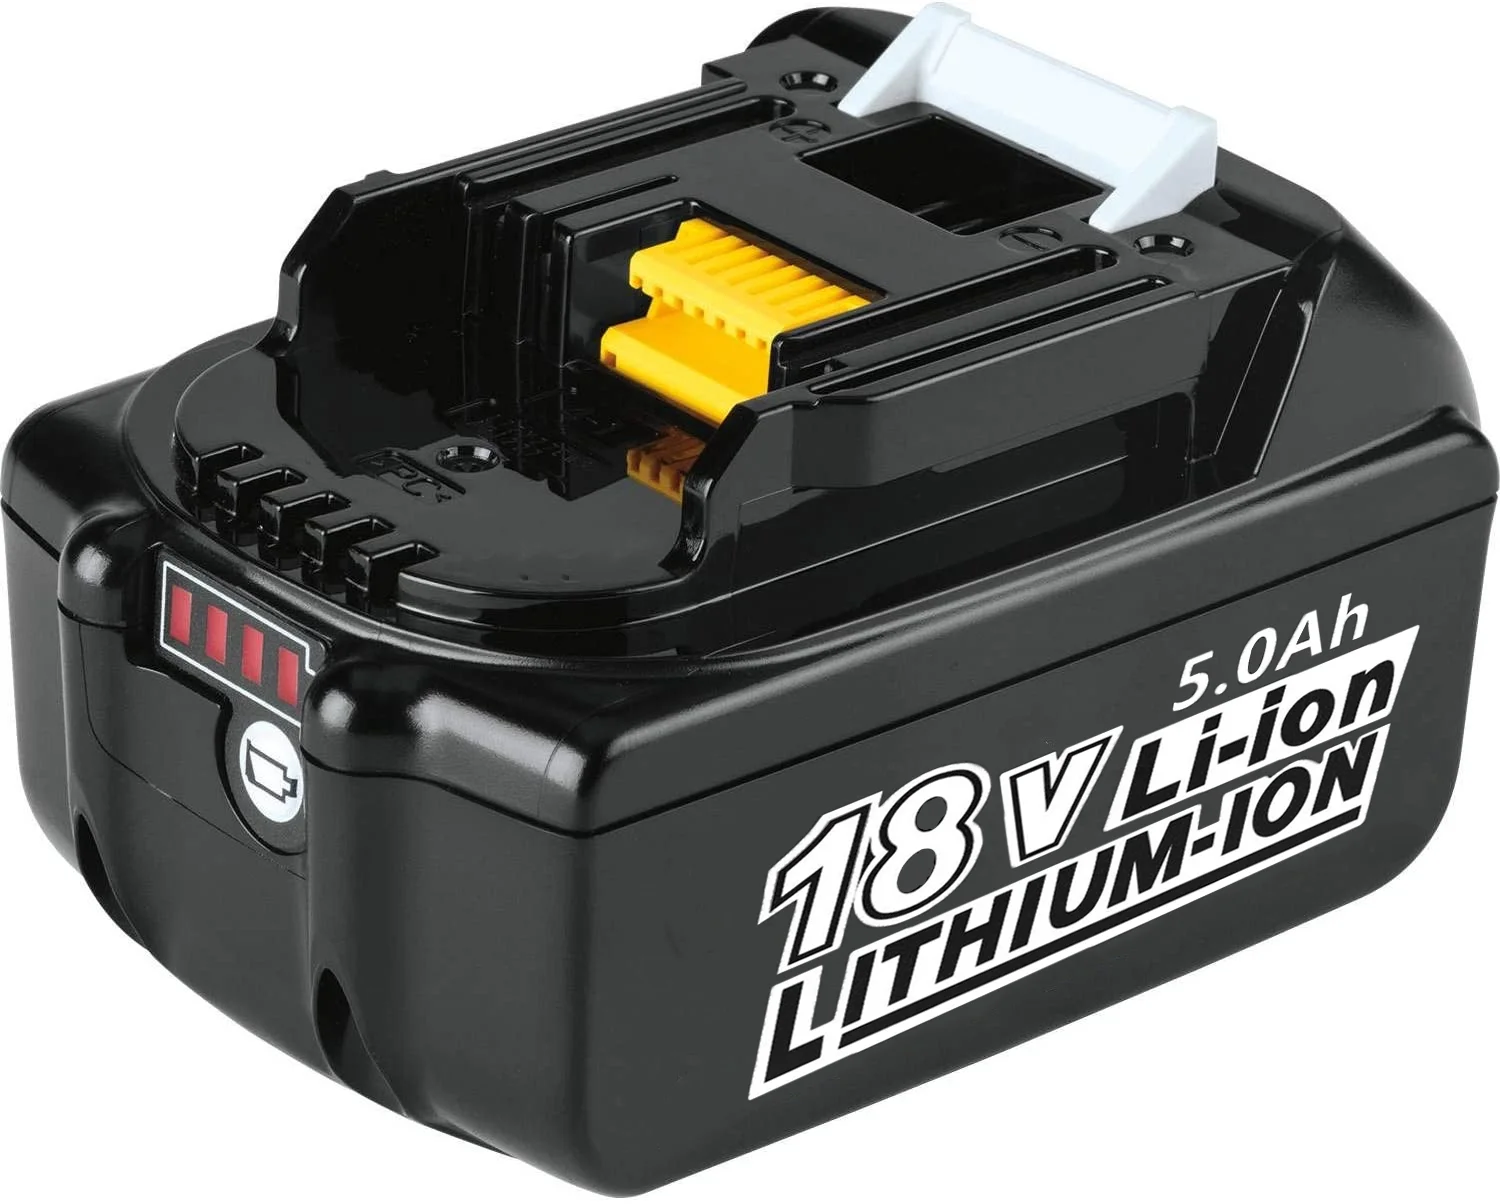 

[NEUE UPGRADER] 18V 5,0 Ah BL1850B Batterie Ersatz für Batterie BL1830 BL1850 BL1840 18V Cordless power Tools Batterien